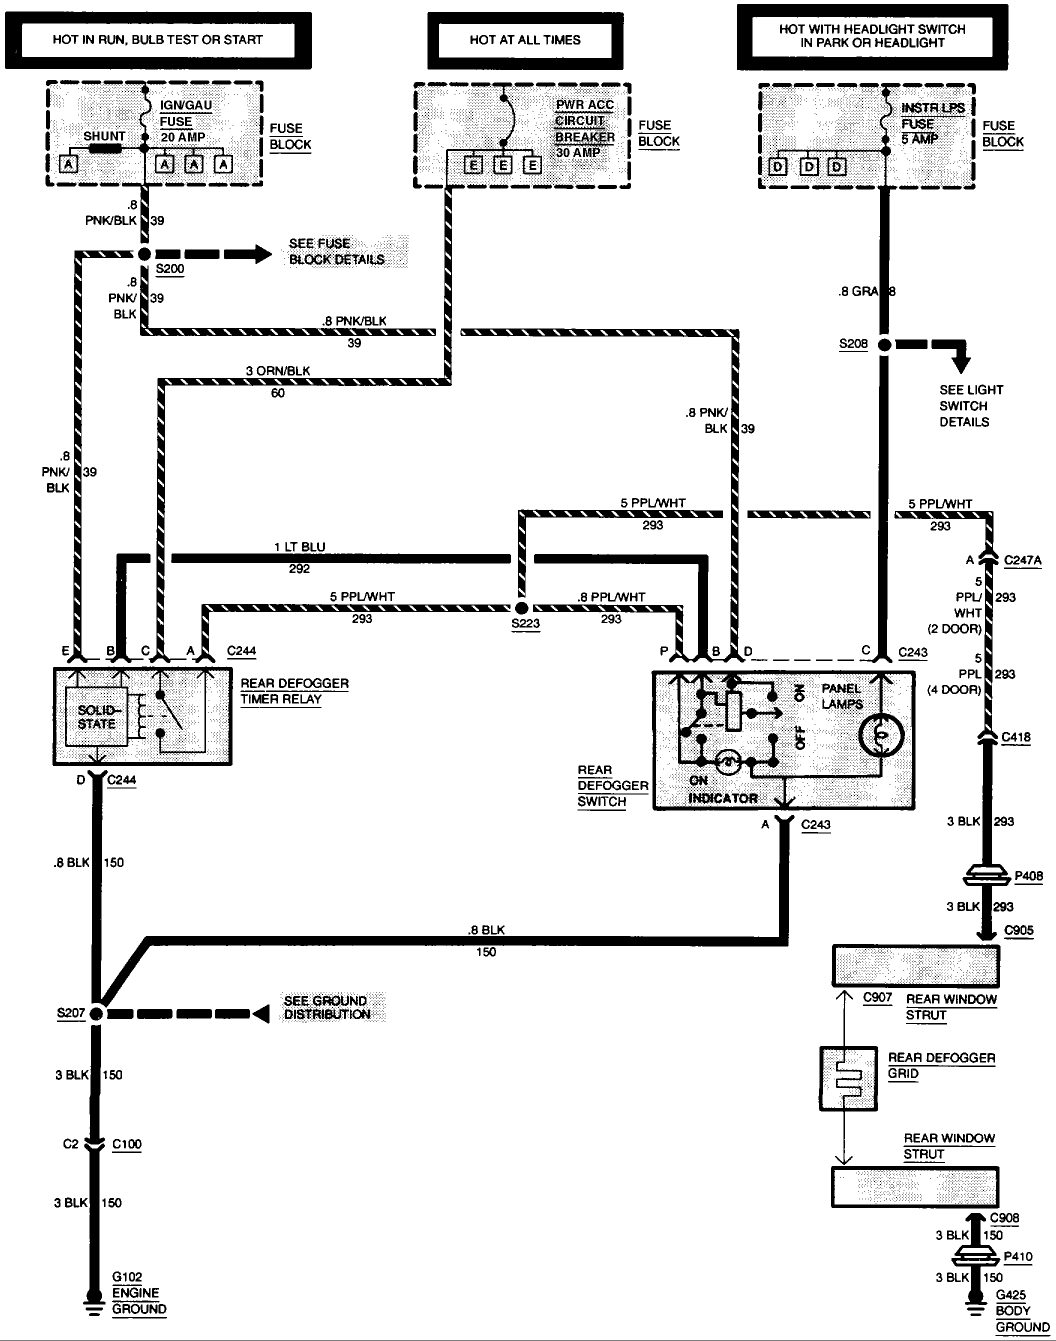 1994 S10 Wiring Diagram Pdf from blazerforum.com